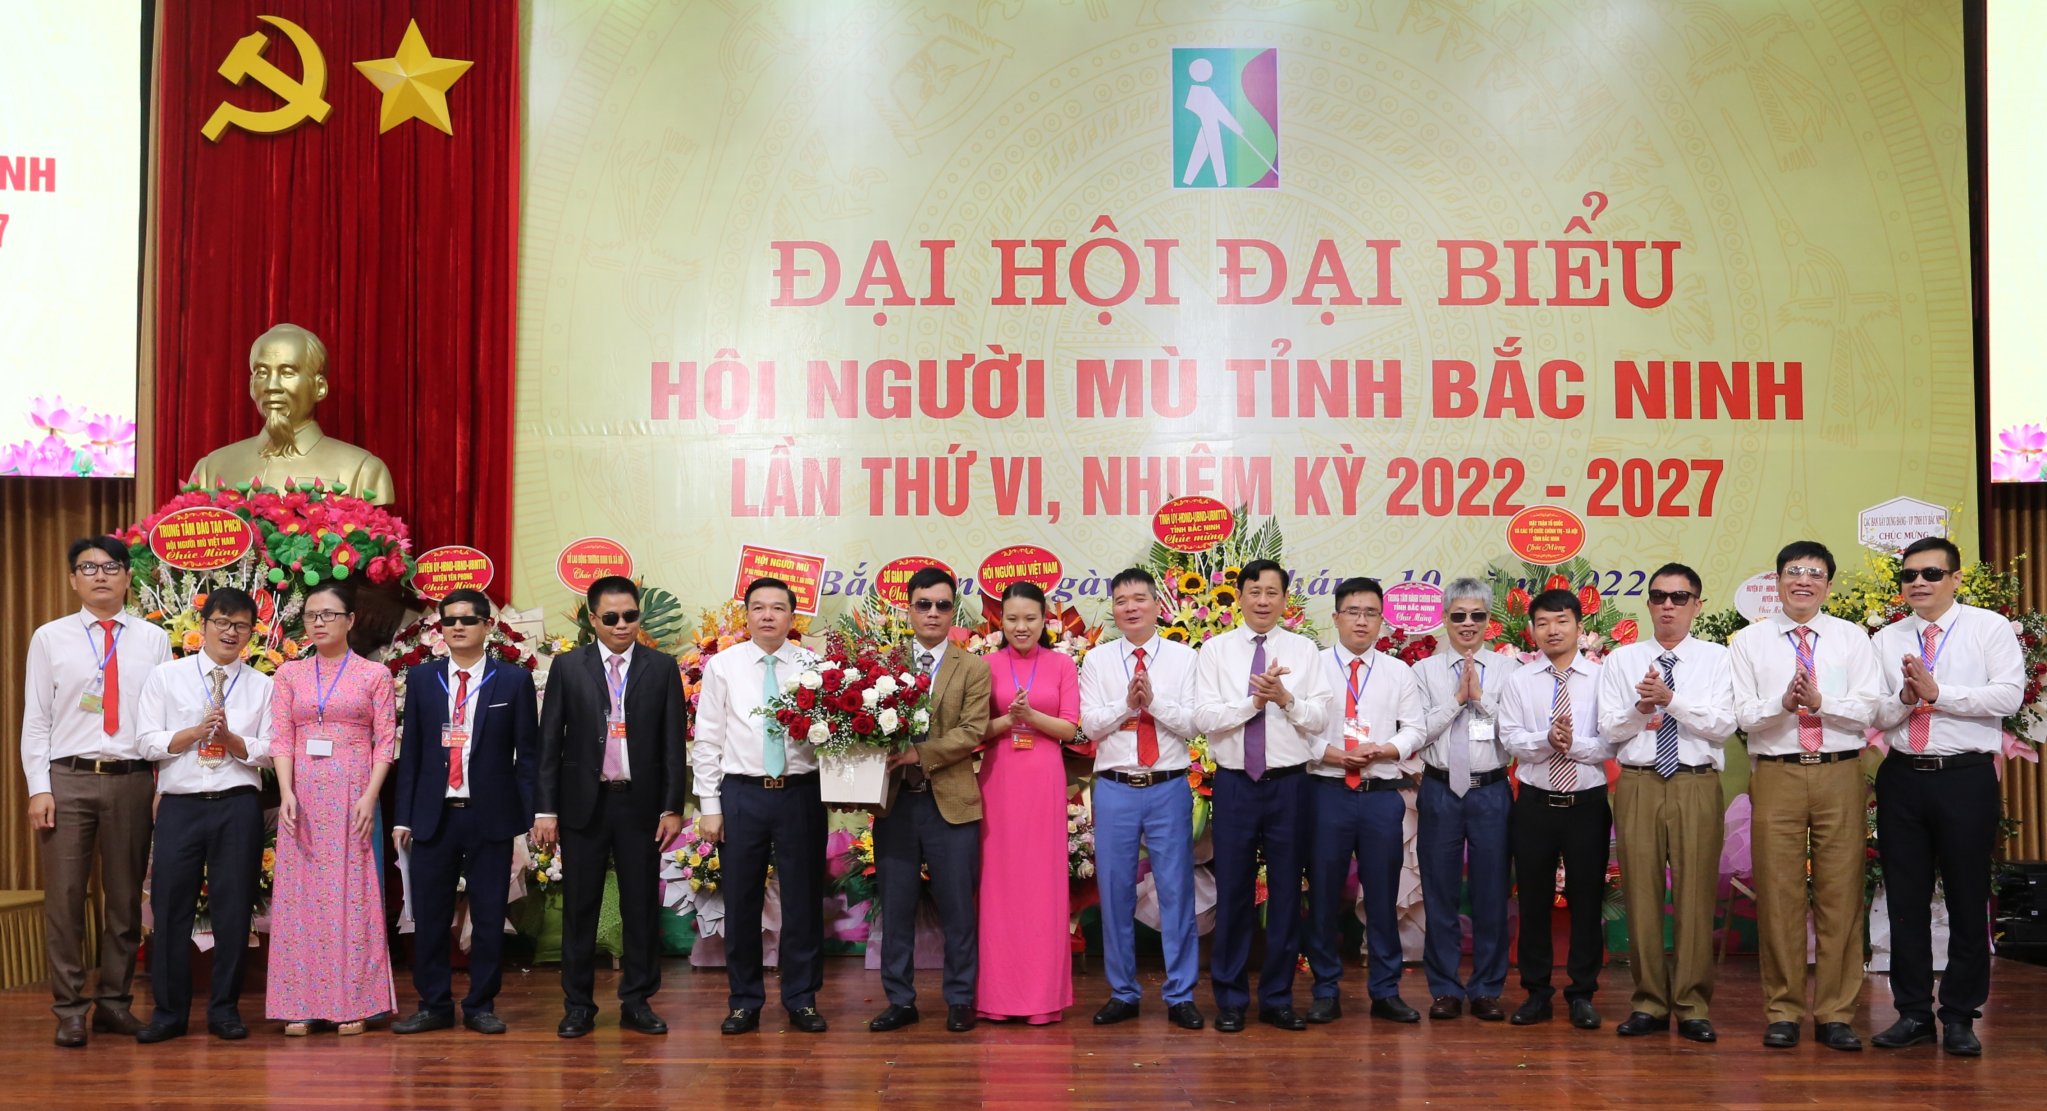 Đại hội đại biểu Hội Người mù tỉnh Bắc Ninh nhiệm kỳ 2022- 2027